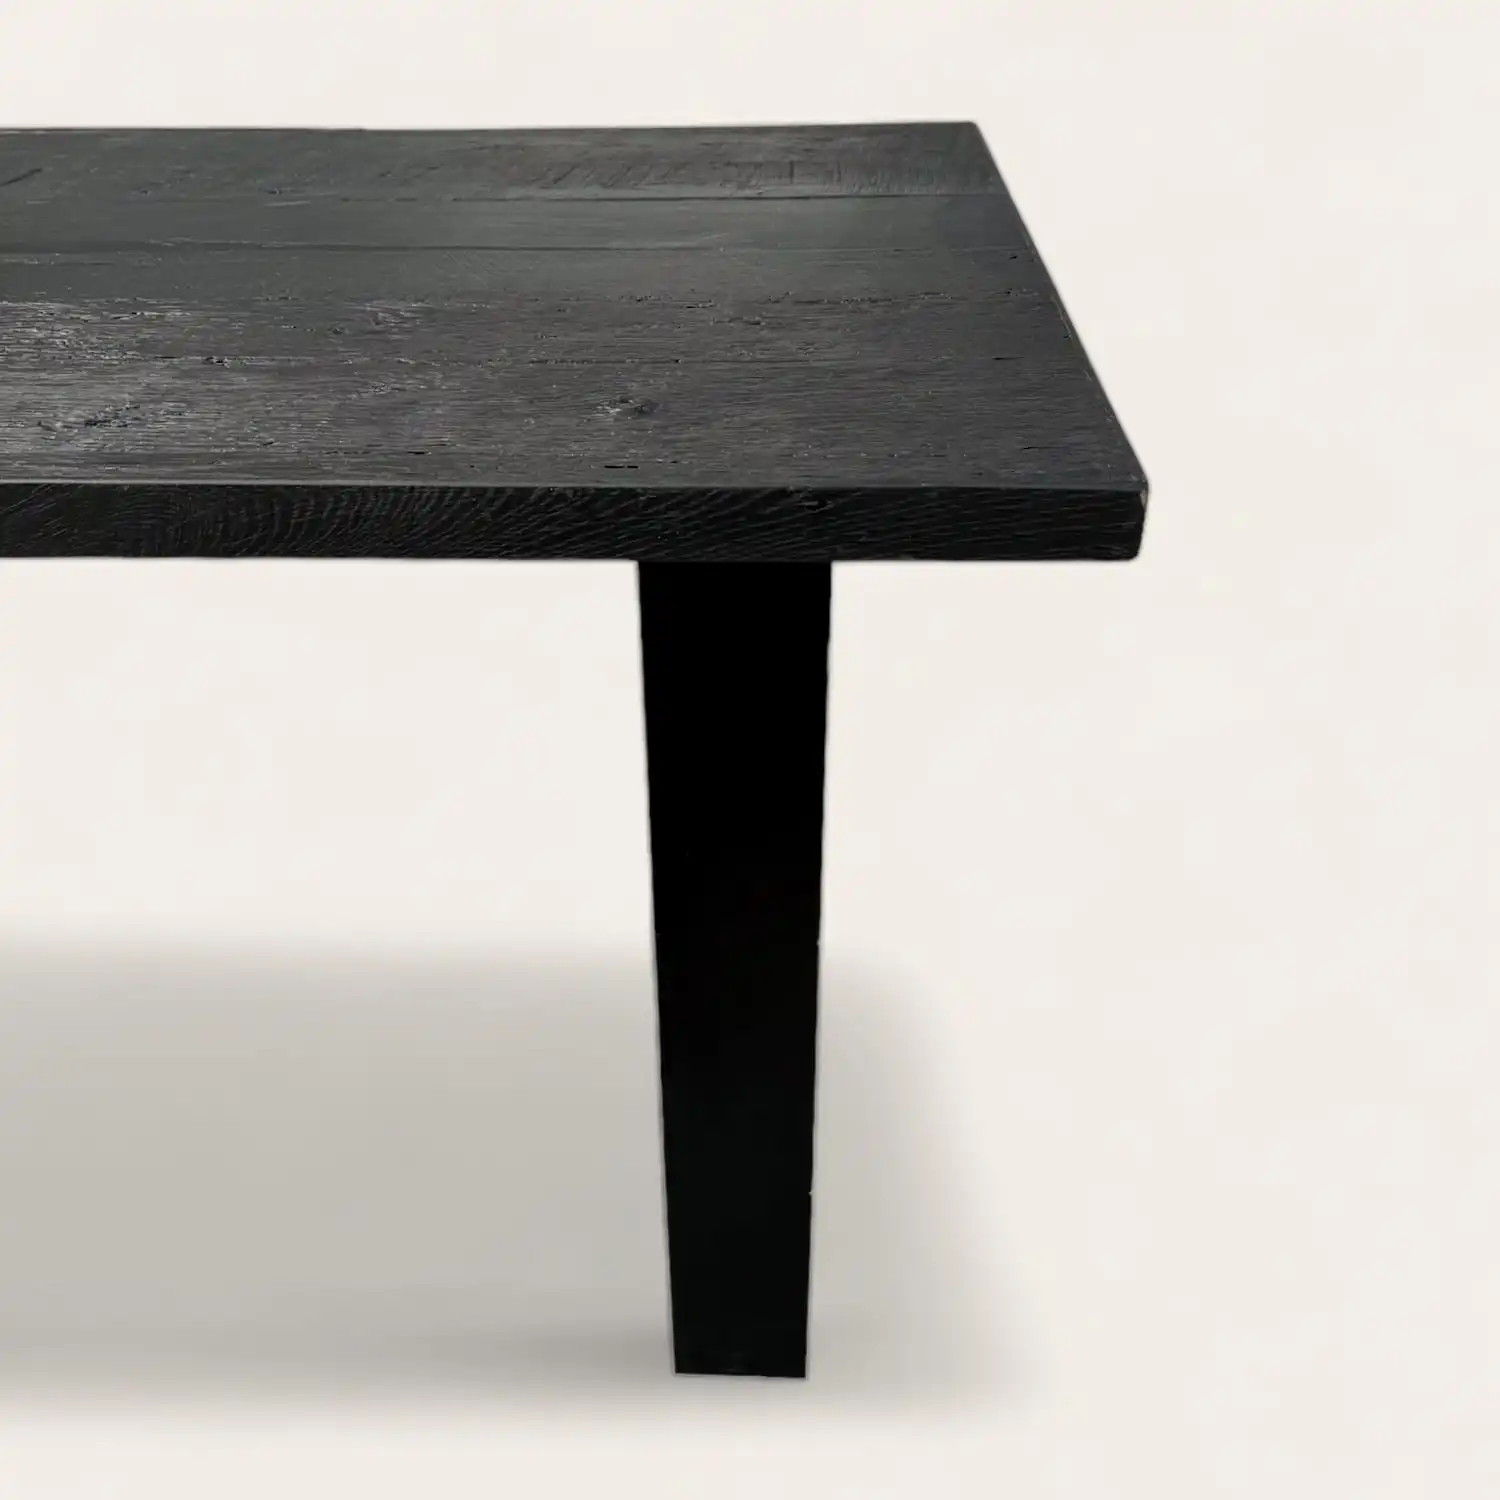  Une table à manger bois noir sur fond blanc. 